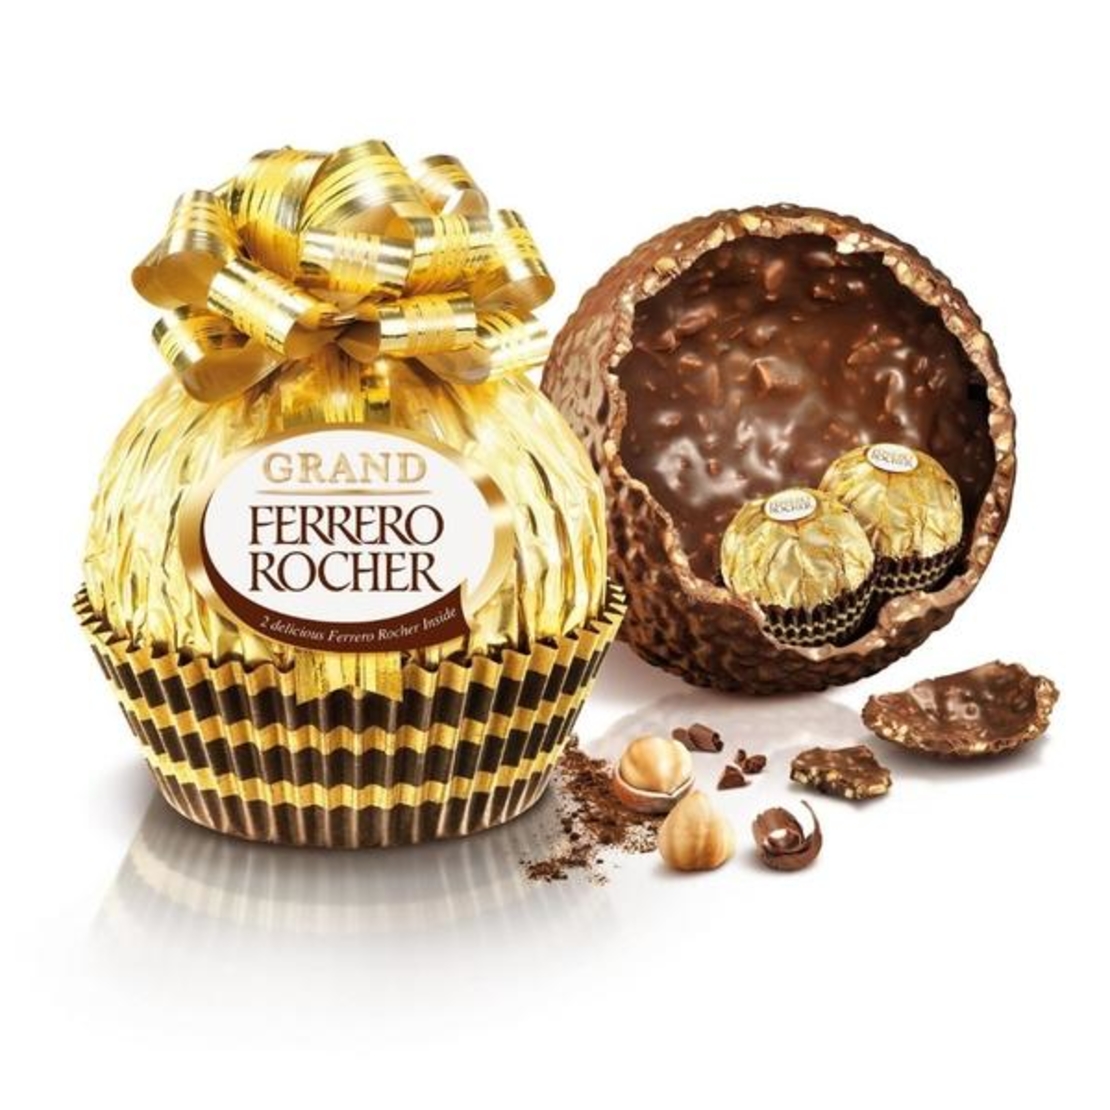 Grand Ferrero Rocher Ball